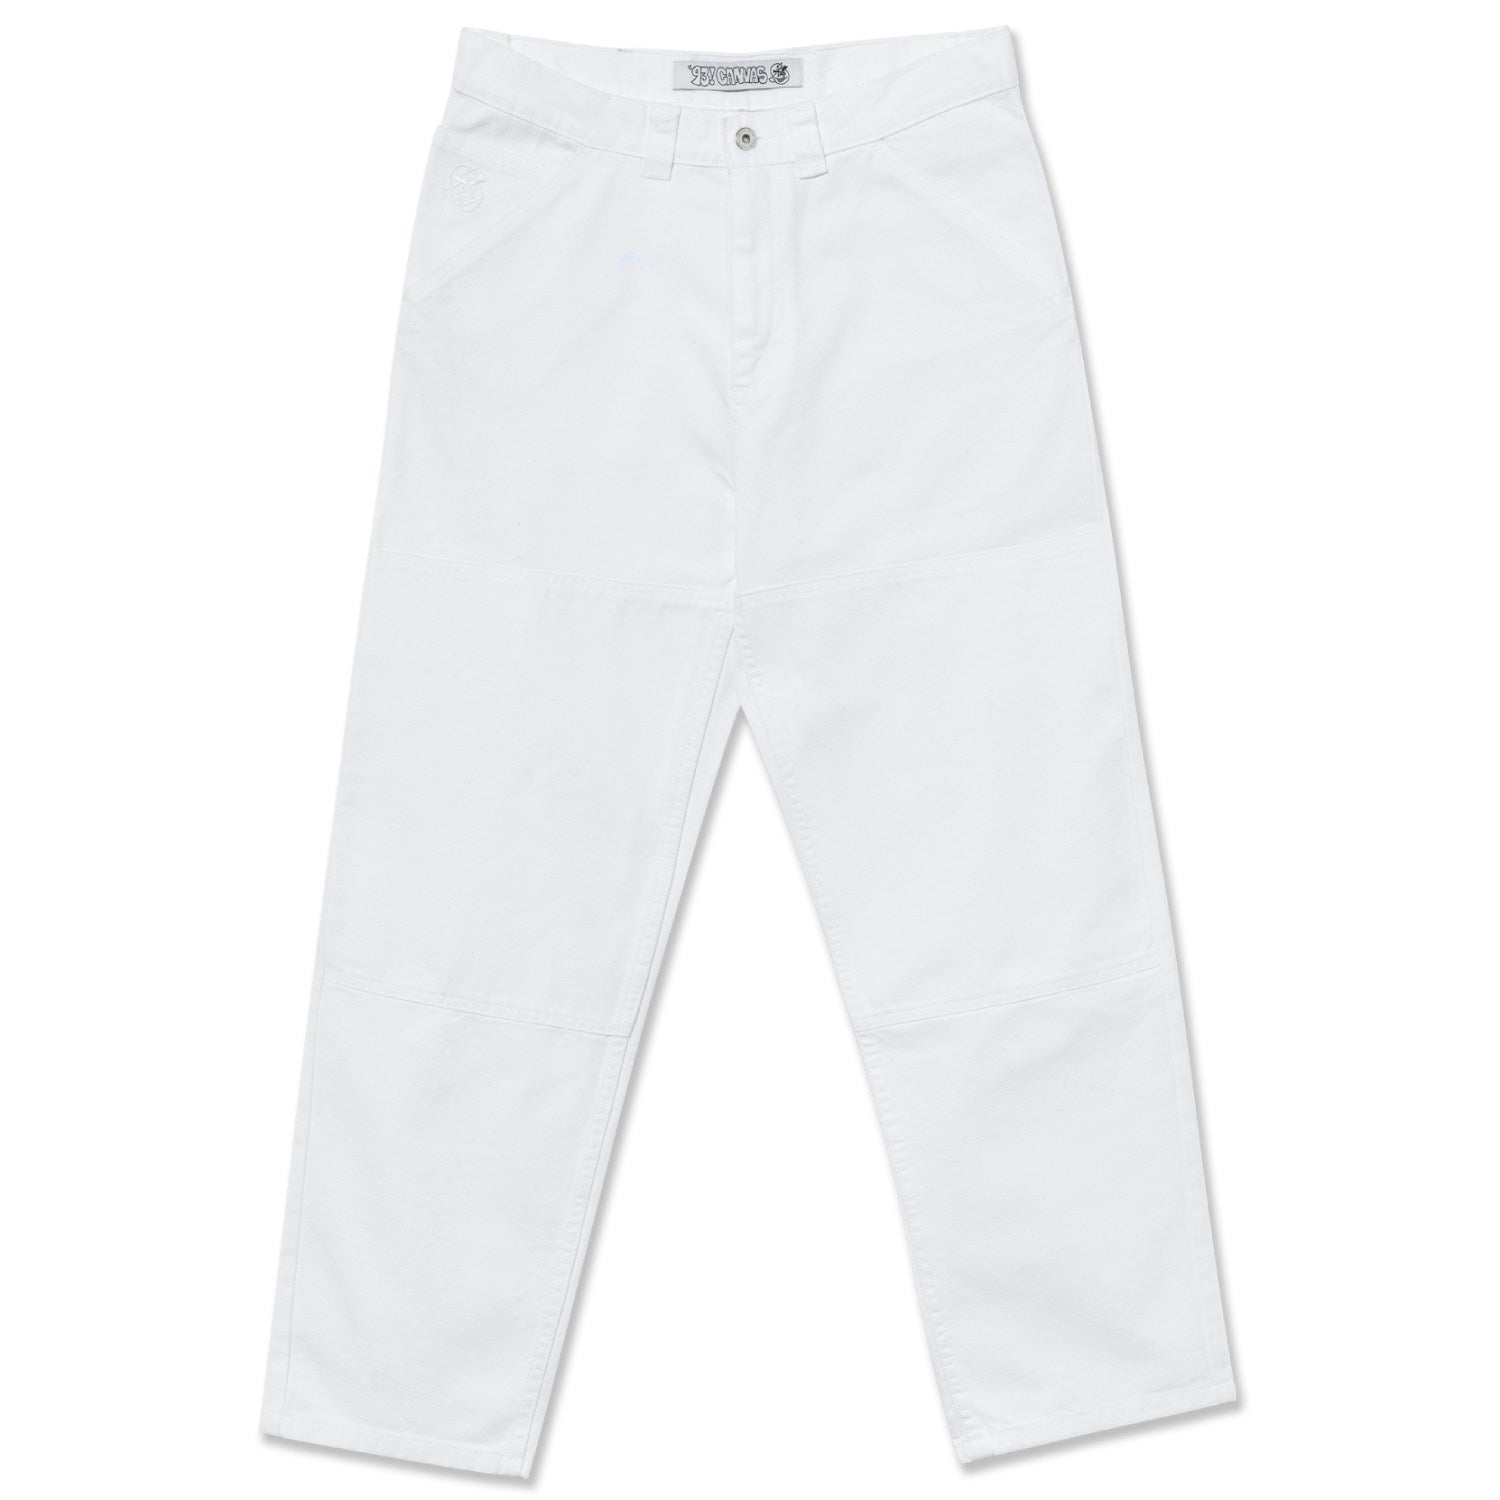 Polar 93! Work Pants - White